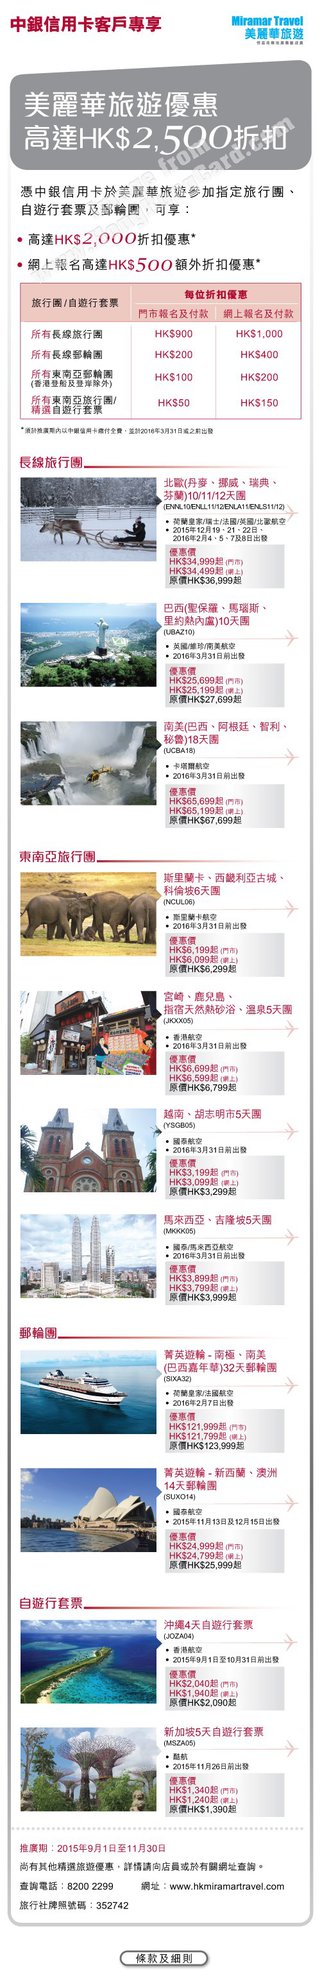 中銀信用卡客戶專享美麗華旅遊優惠高達HK$2,500折扣